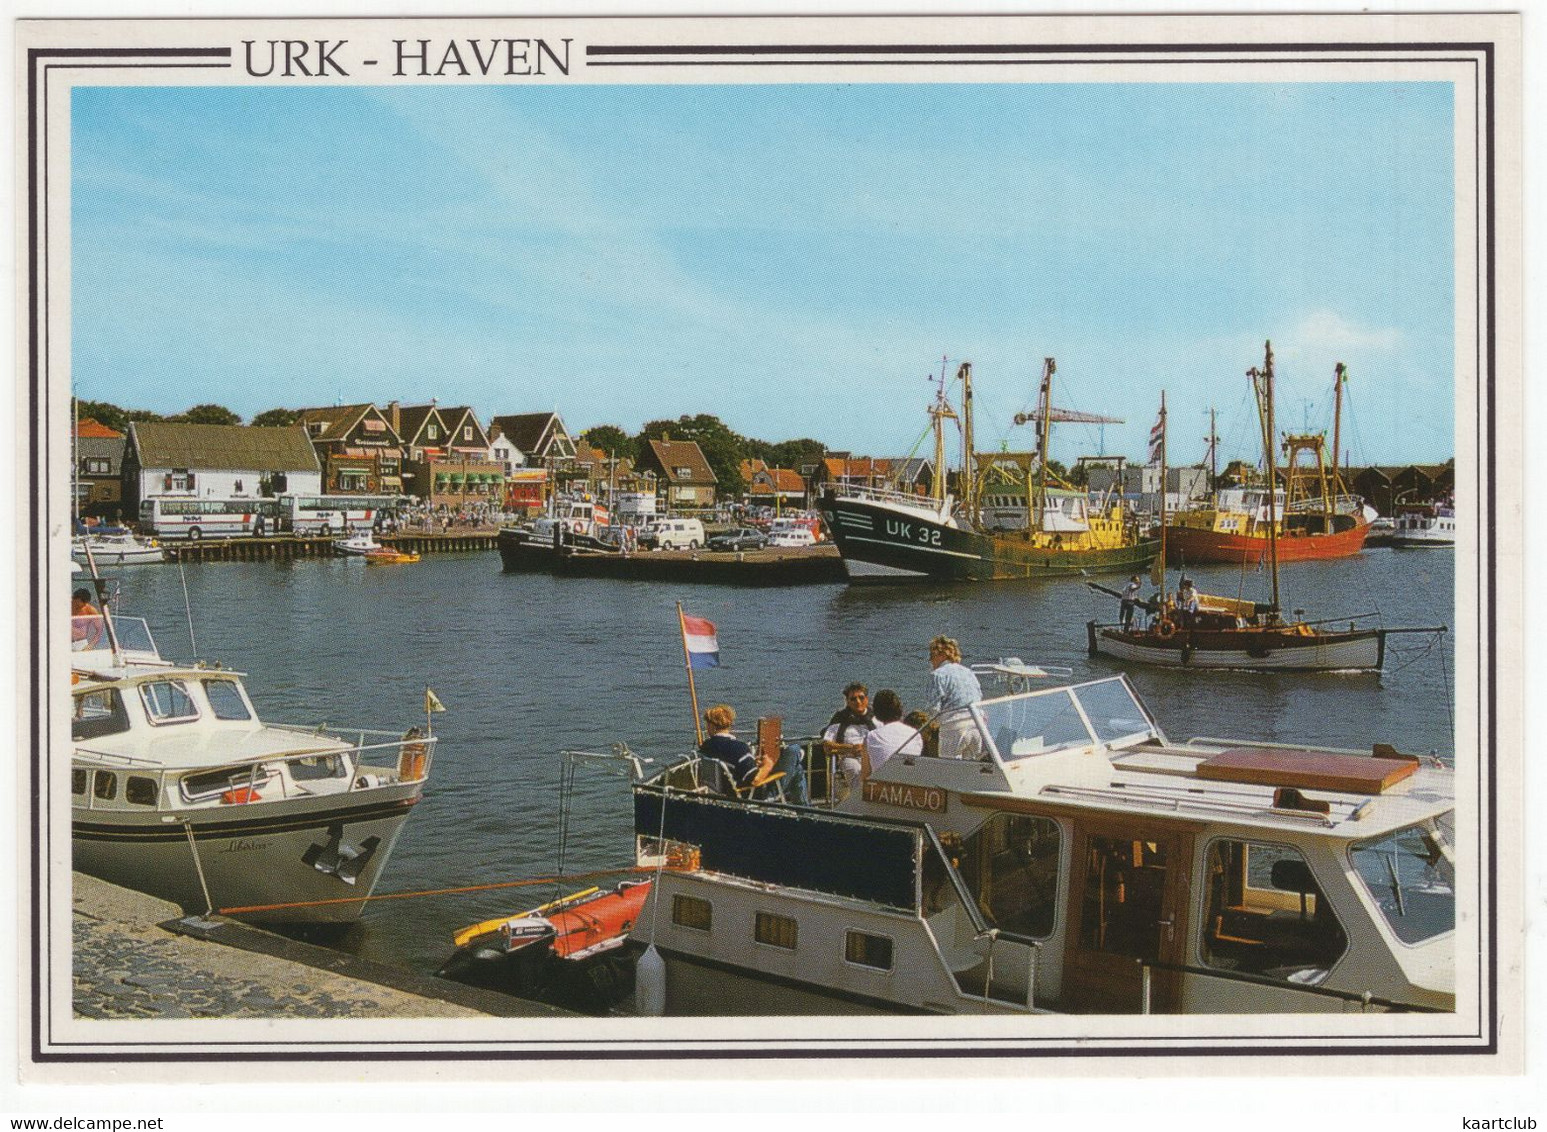 Urk - Haven -  (Holland/Nederland) - Nr. URK 35 - Urk